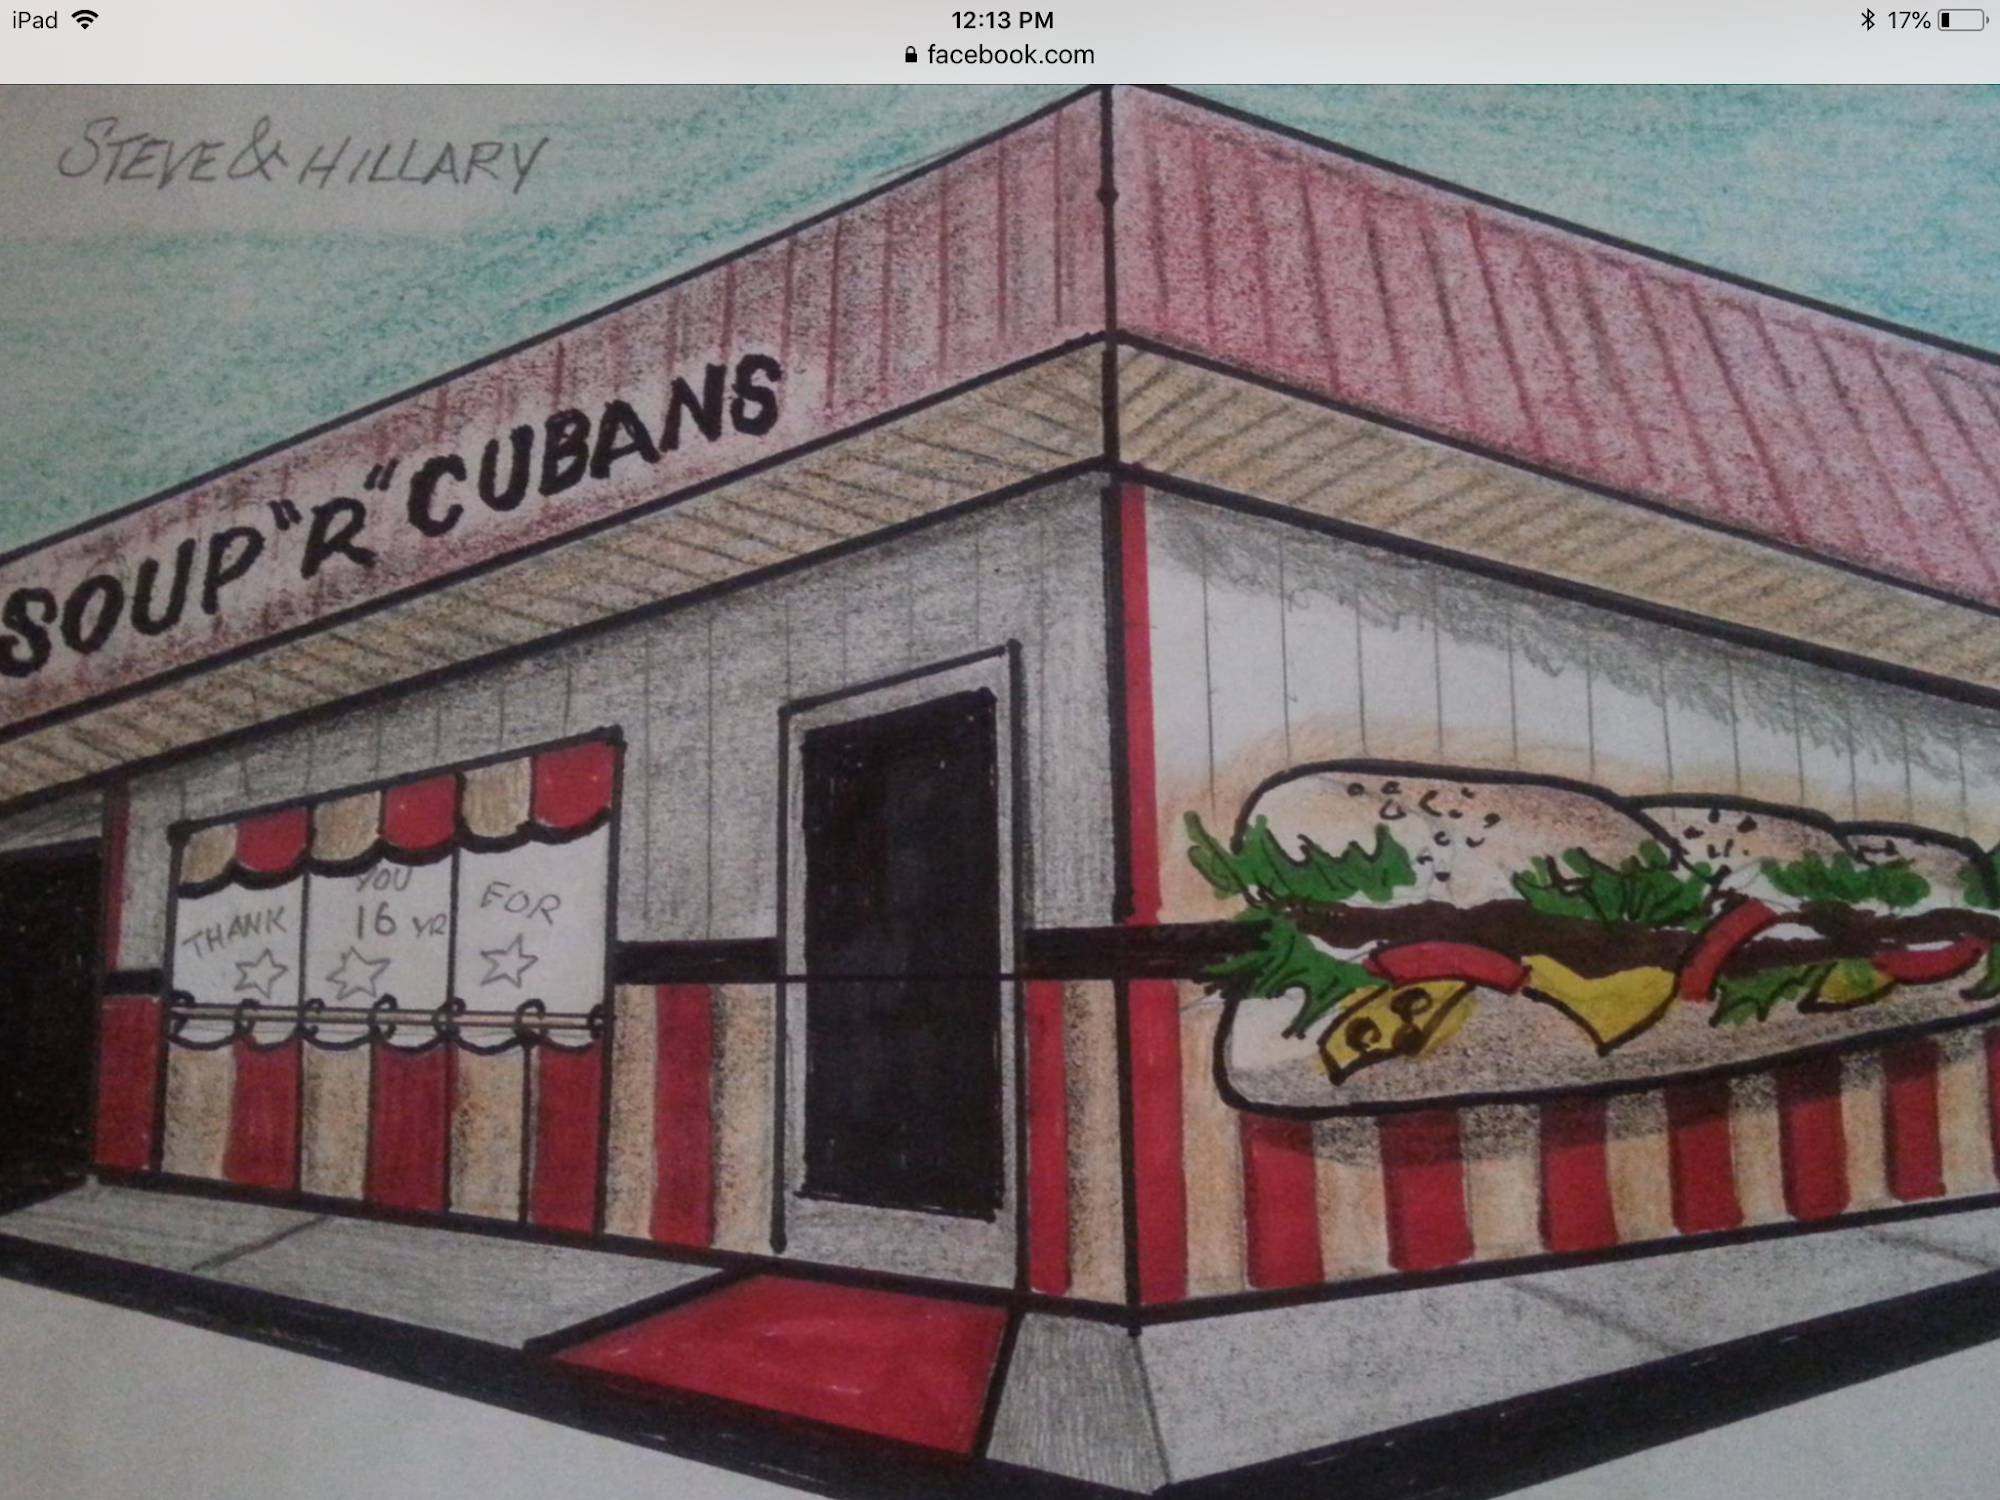 Soup'r Cubans Sandwich Shop